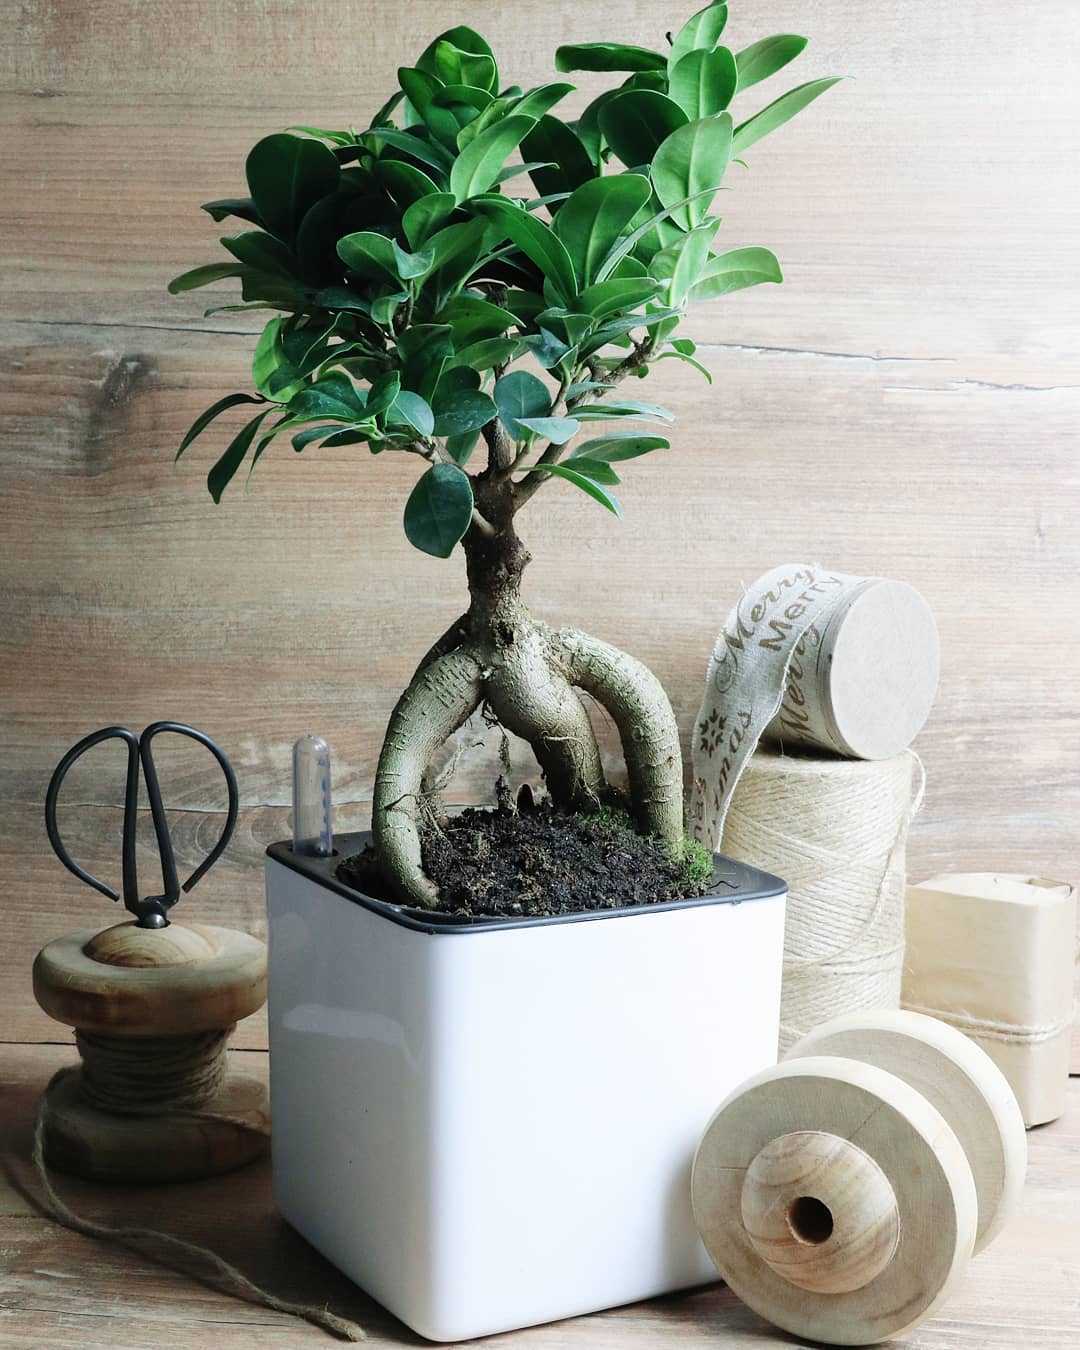 Дерево бонсай – как сделать из обычного растения, вырастить из черенка и семян, правила ухода